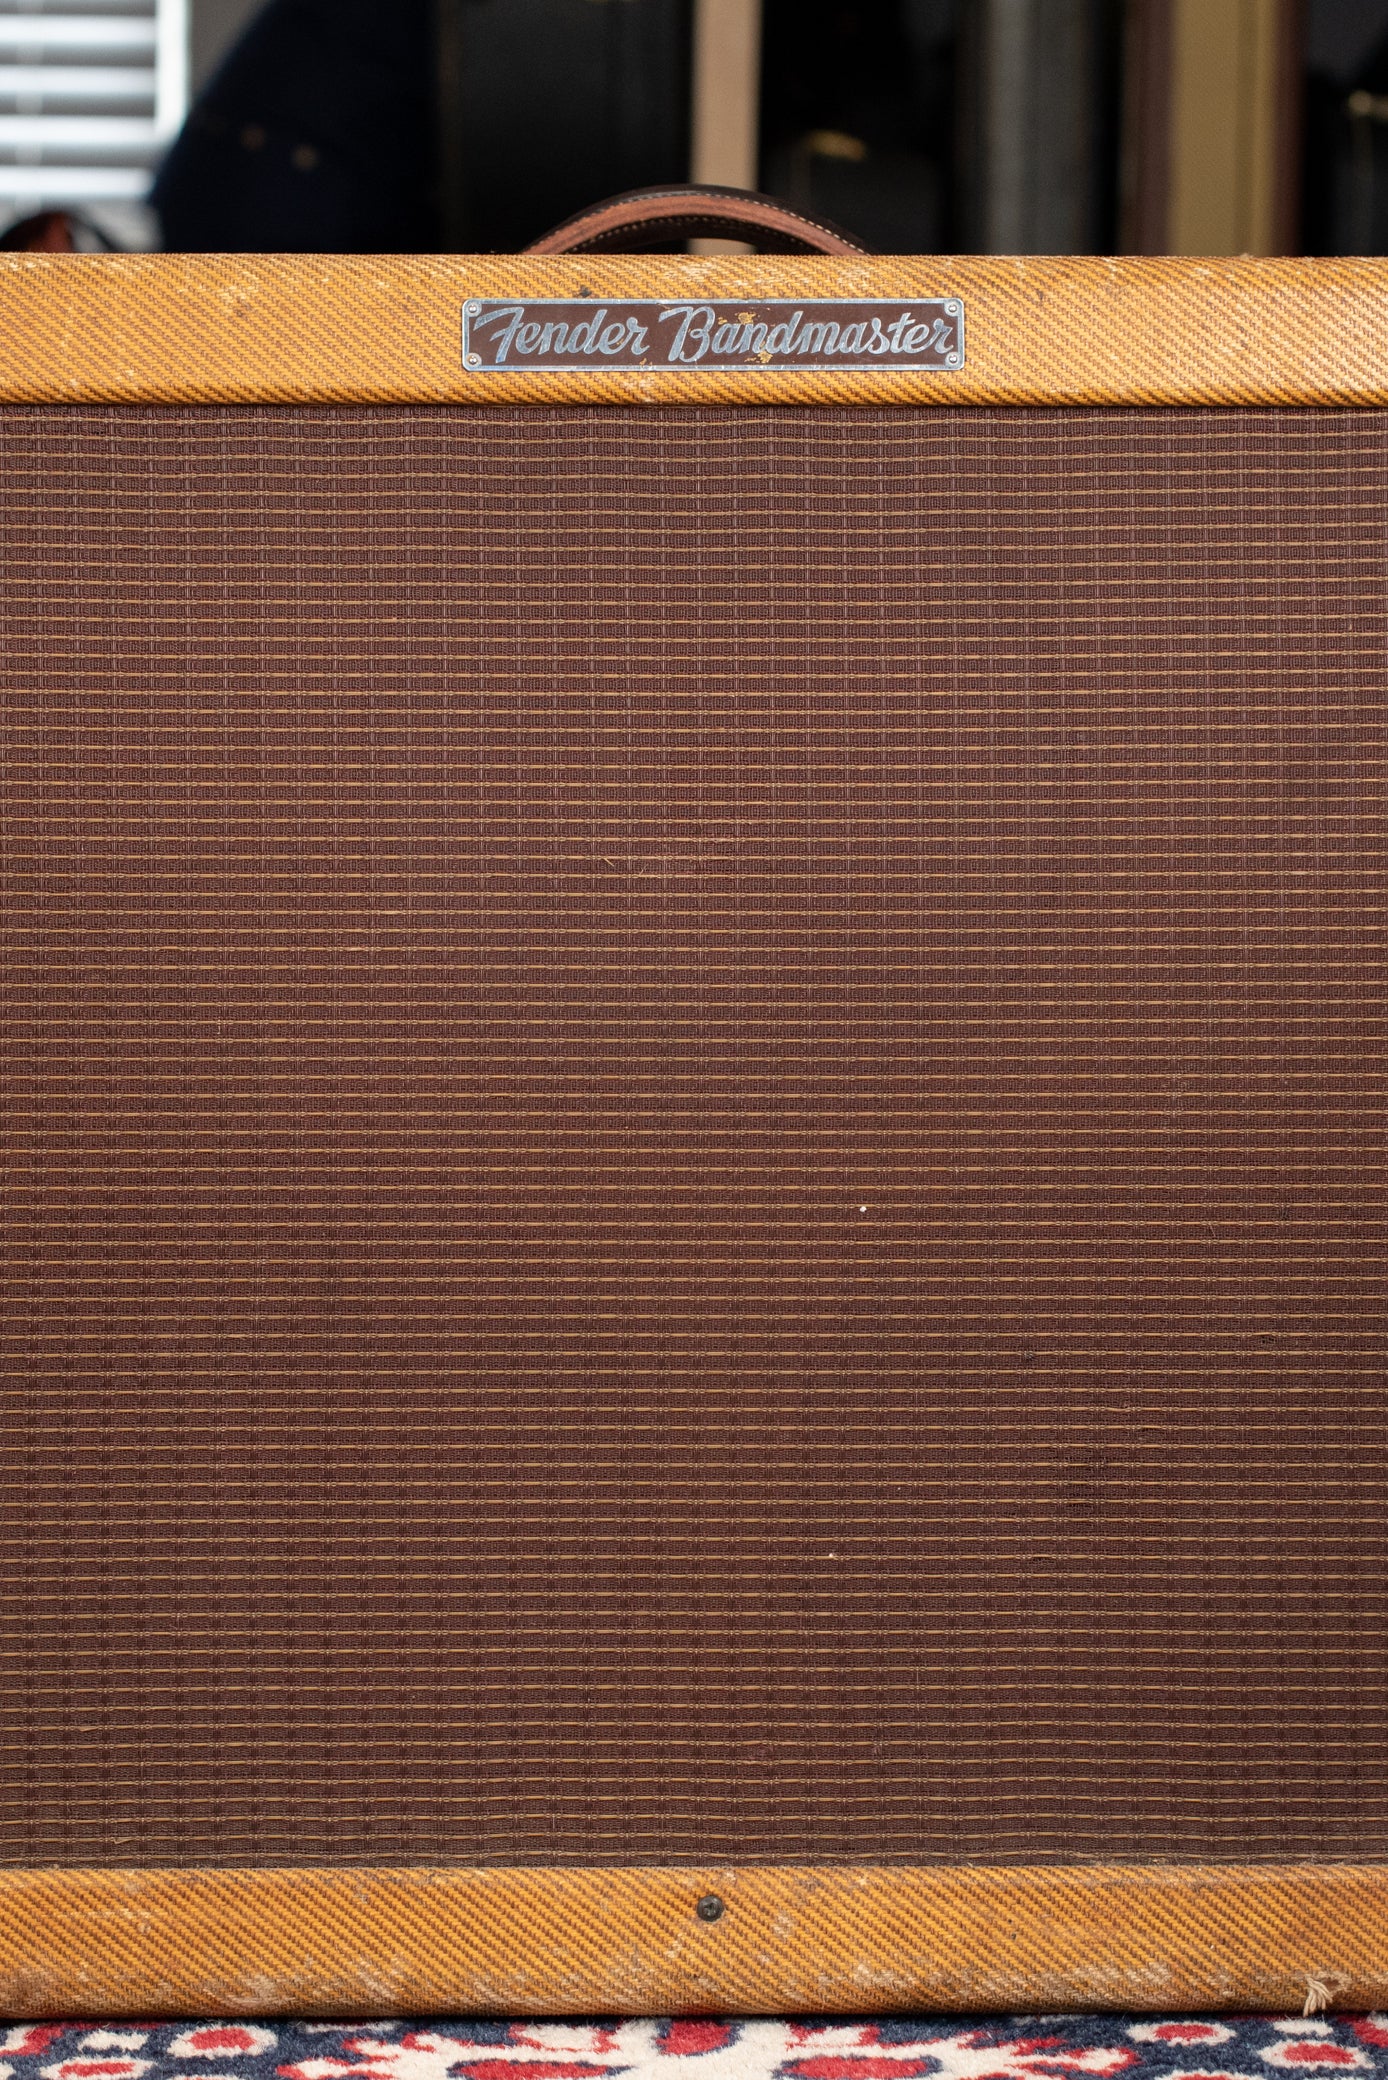 1957 Fender Bandmaster Tweed Amp